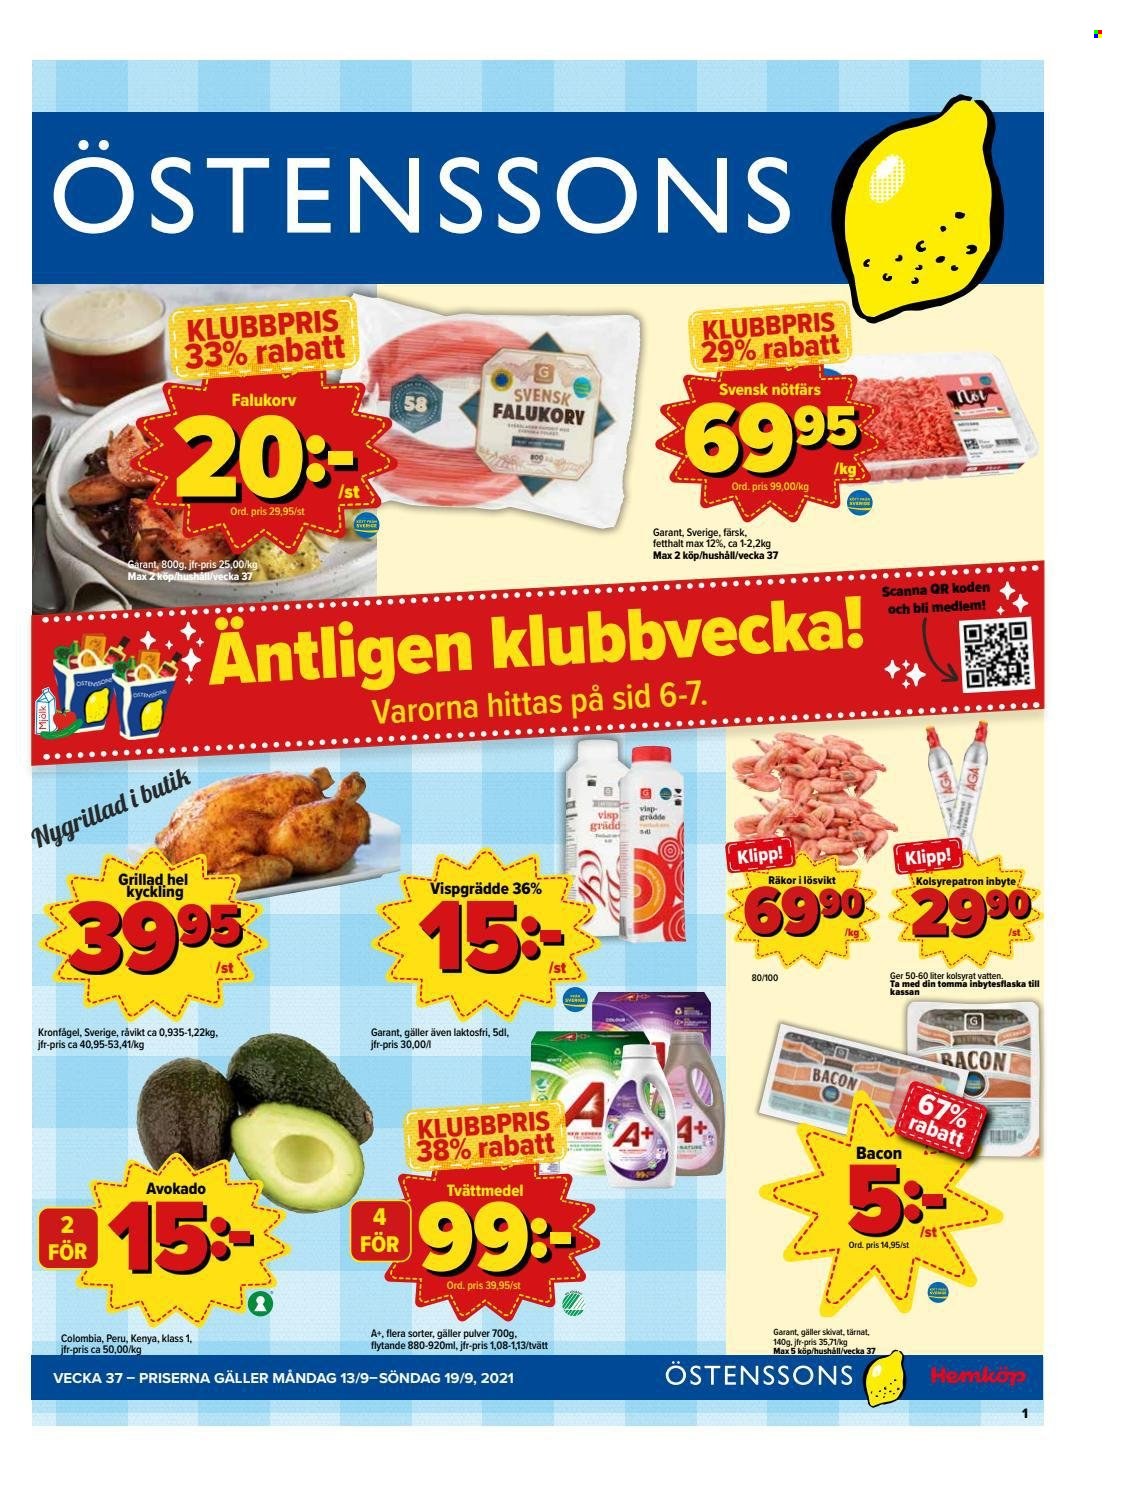 thumbnail - Östenssons reklamblad - 13/9 2021 - 19/9 2021 - varor från reklamblad - hel kyckling, kyckling, avokado, räkor, bacon, grädde, tvättmedel. Sida 1.